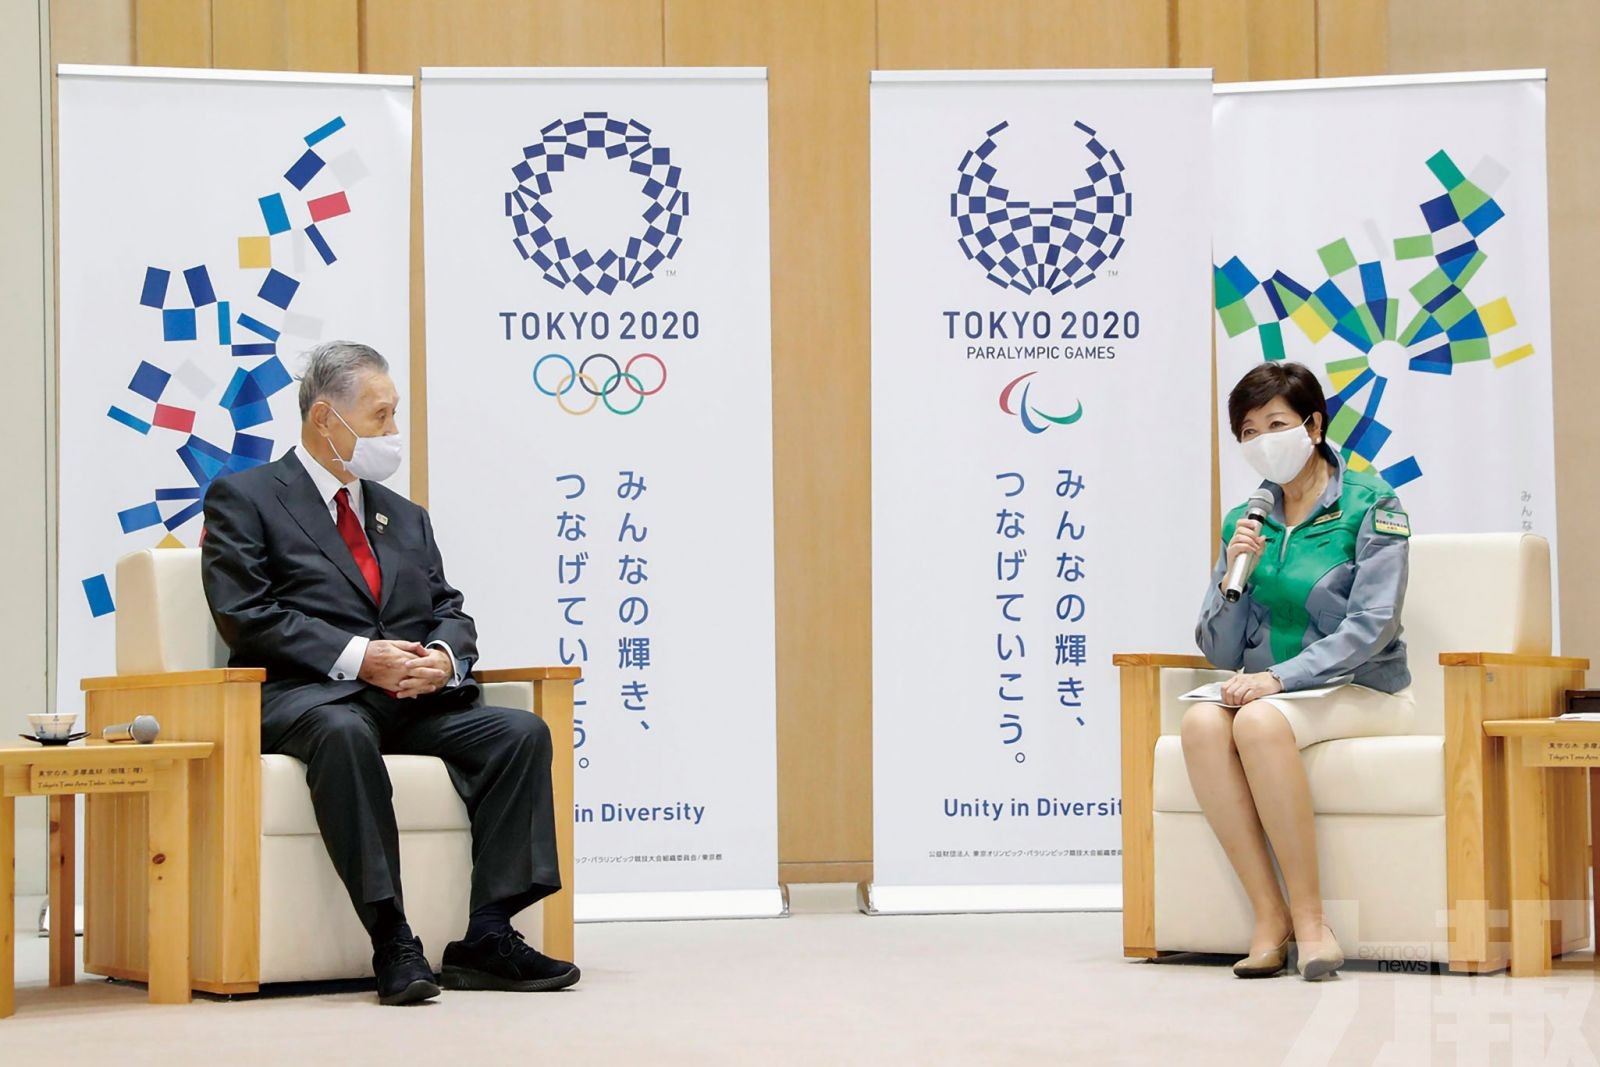 77%日本人認為東京奧運難以舉行